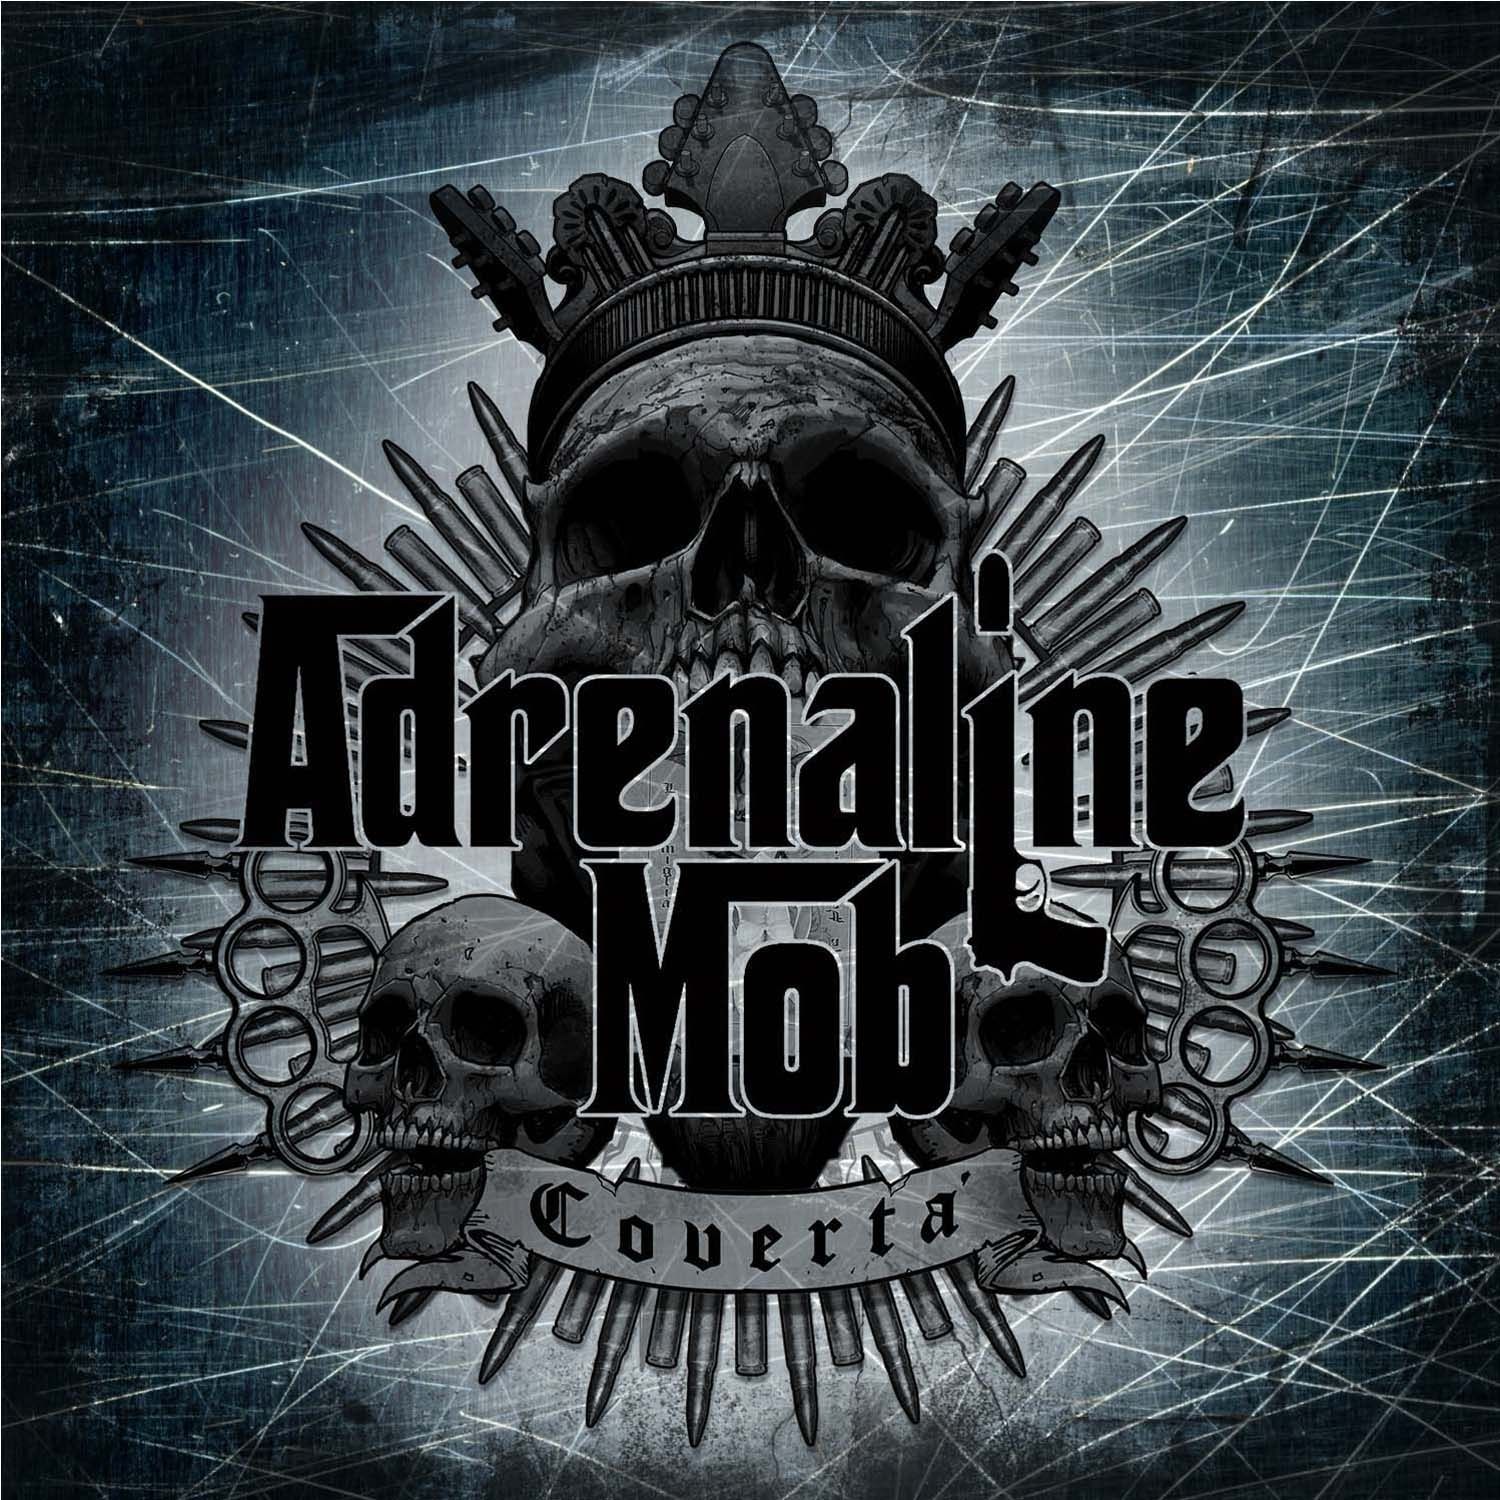 Imagem do álbum Covertá do(a) artista Adrenaline Mob